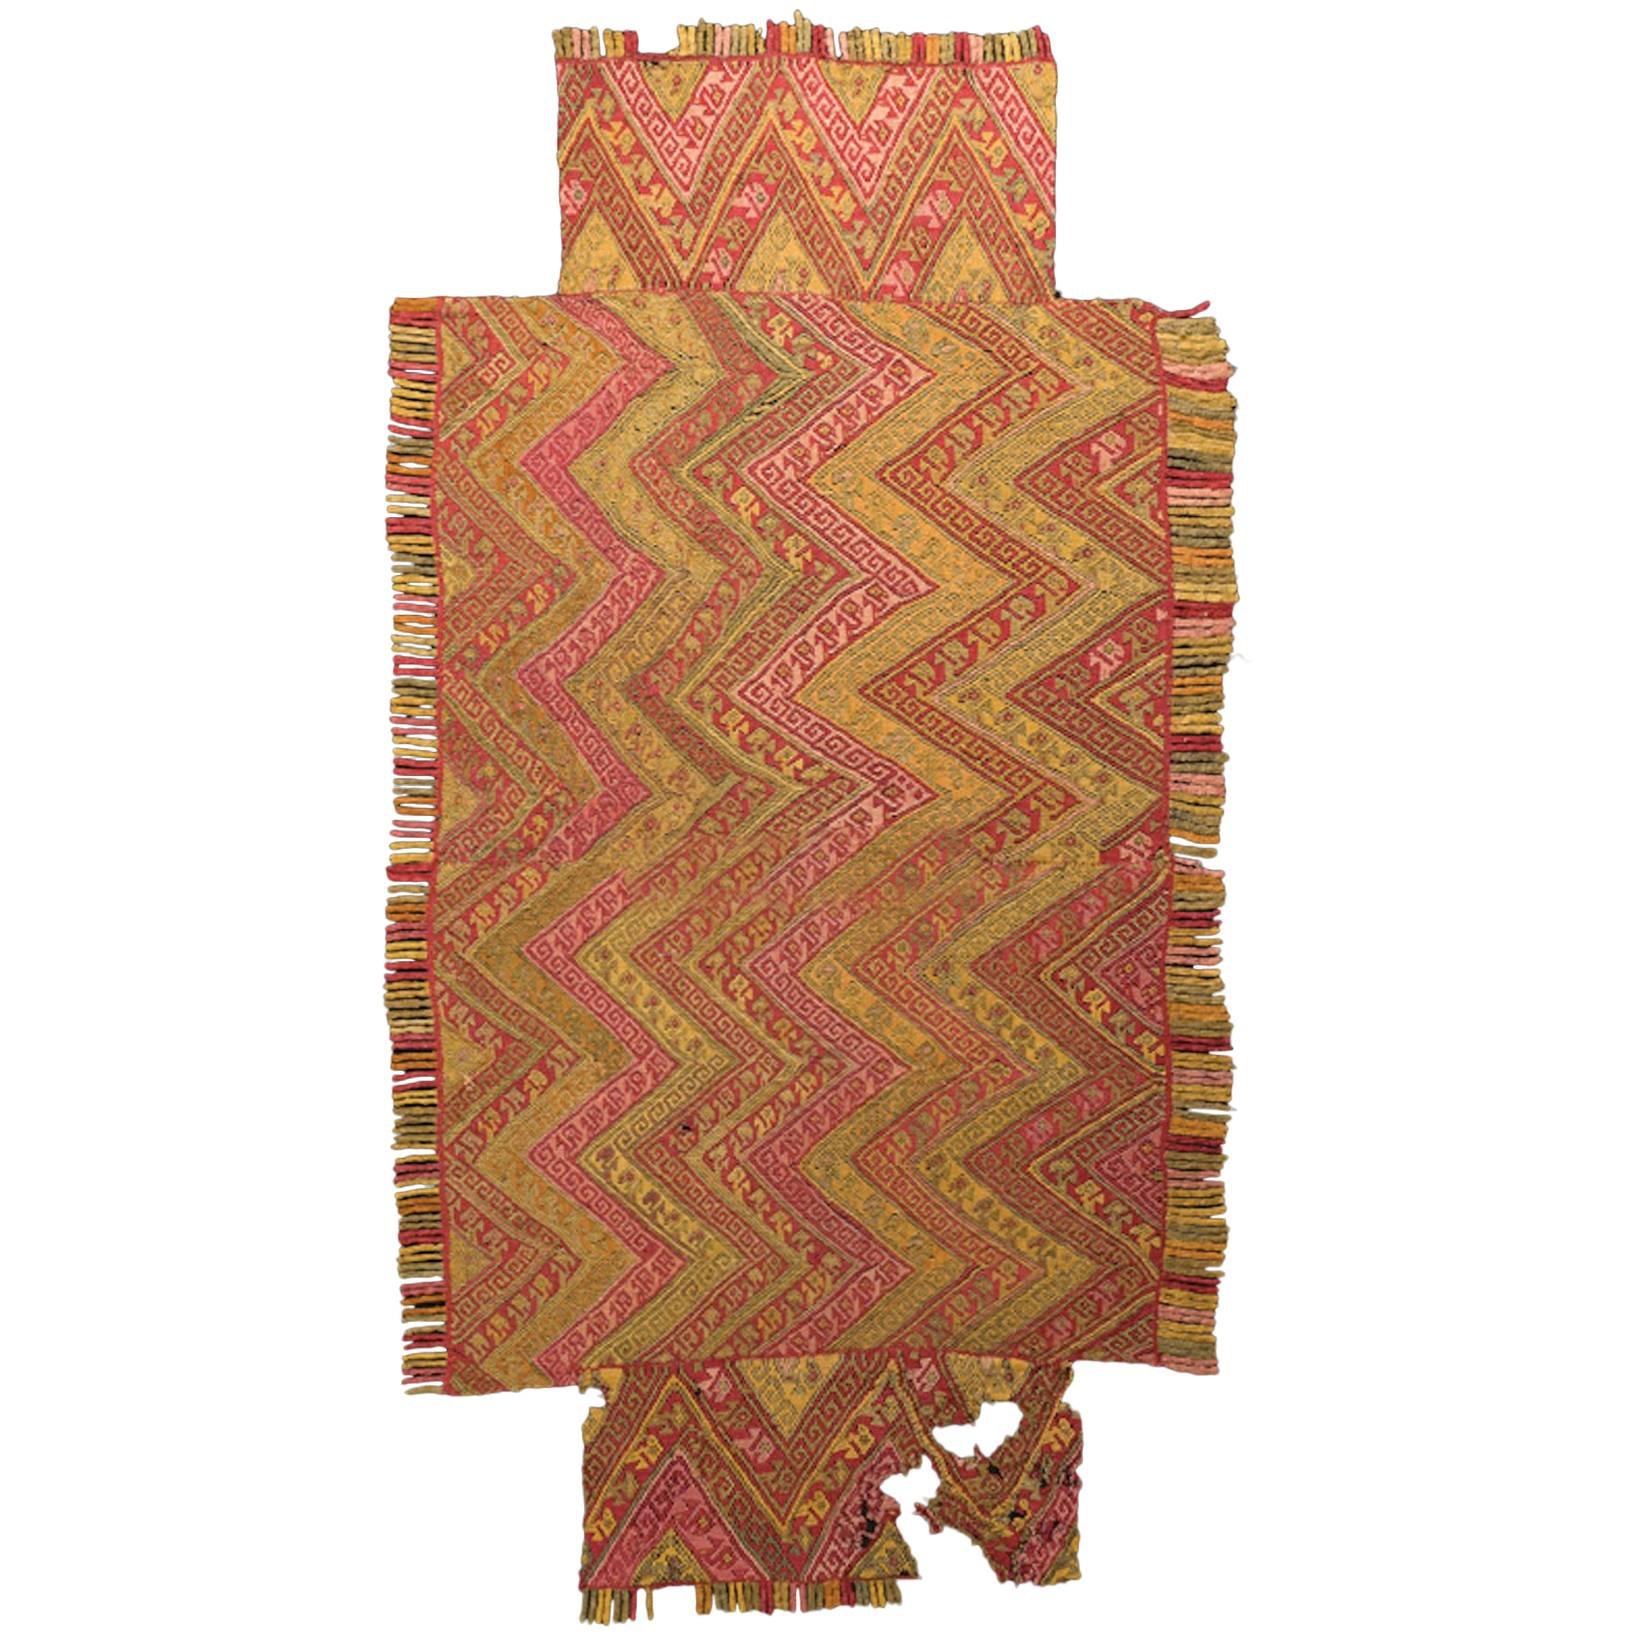 Präkolumbianisches Chimu-Textil, Meandermuster und Fransen, Peru um 900 bis 1300 n. Chr.